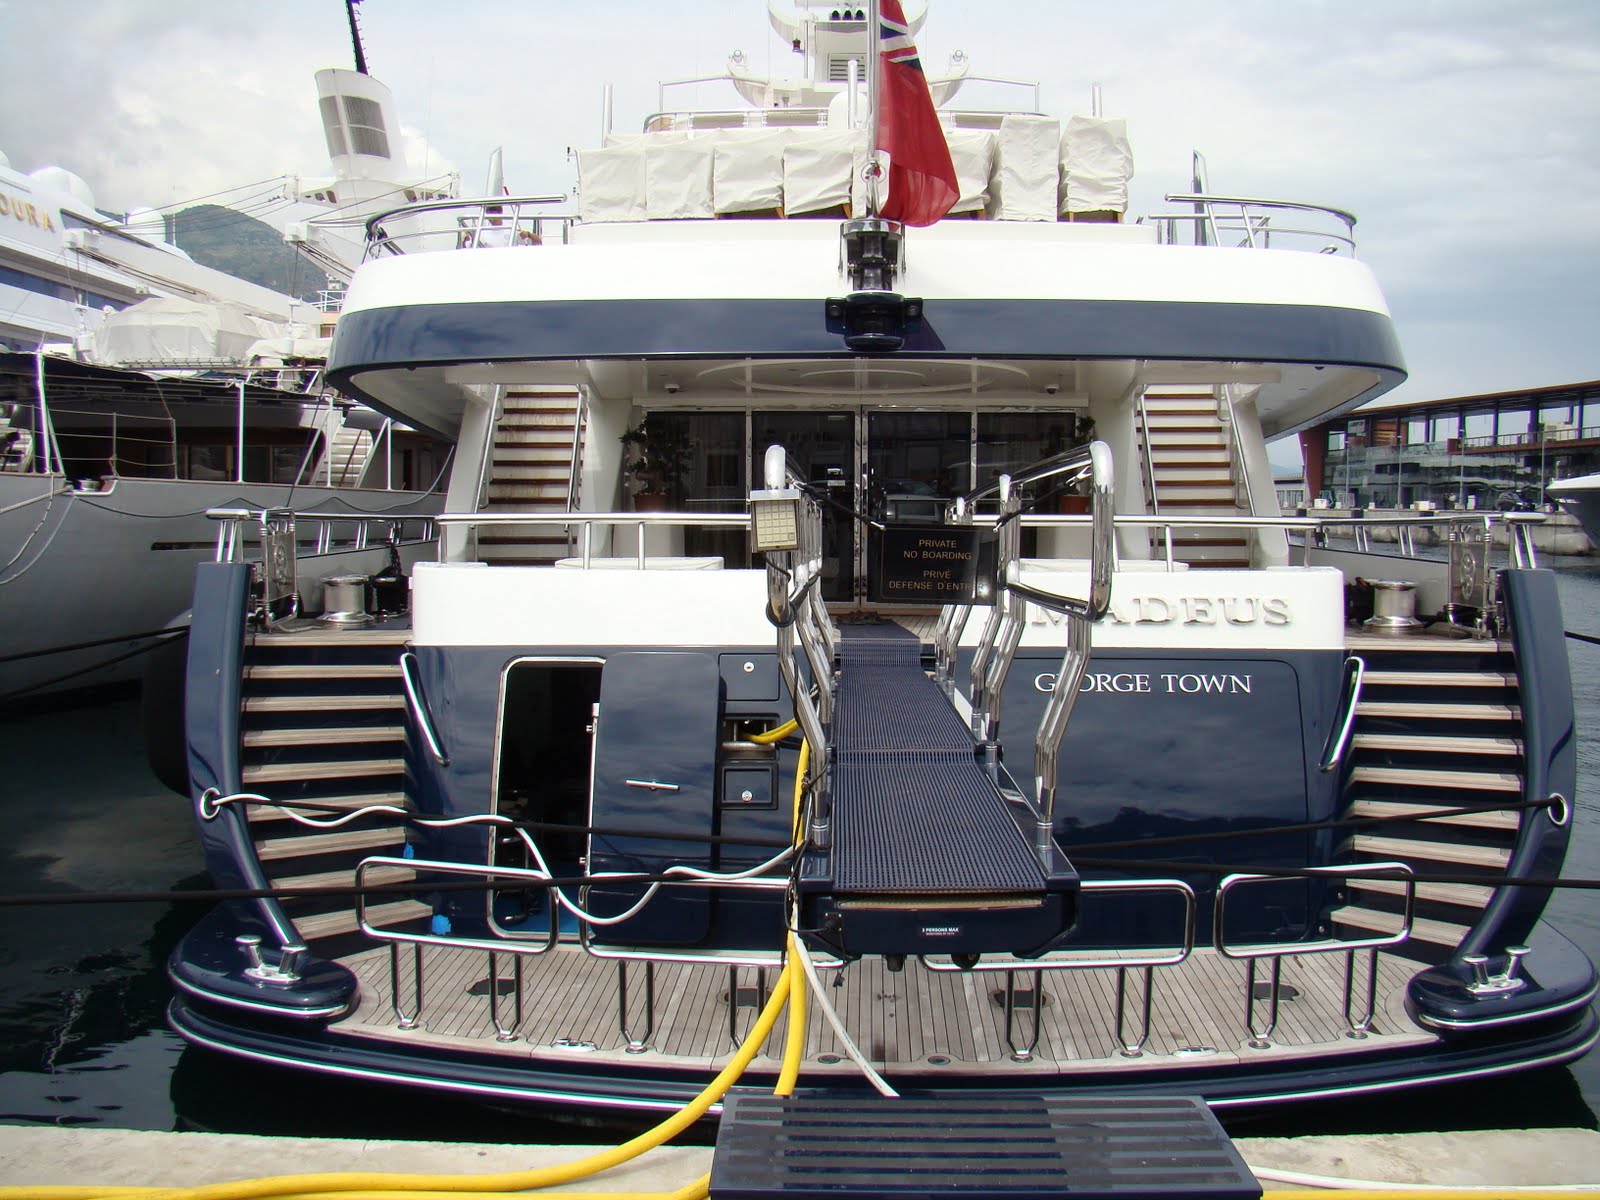 Le méga-yacht de Bernard Arnault, beaucoup trop grand pour le port